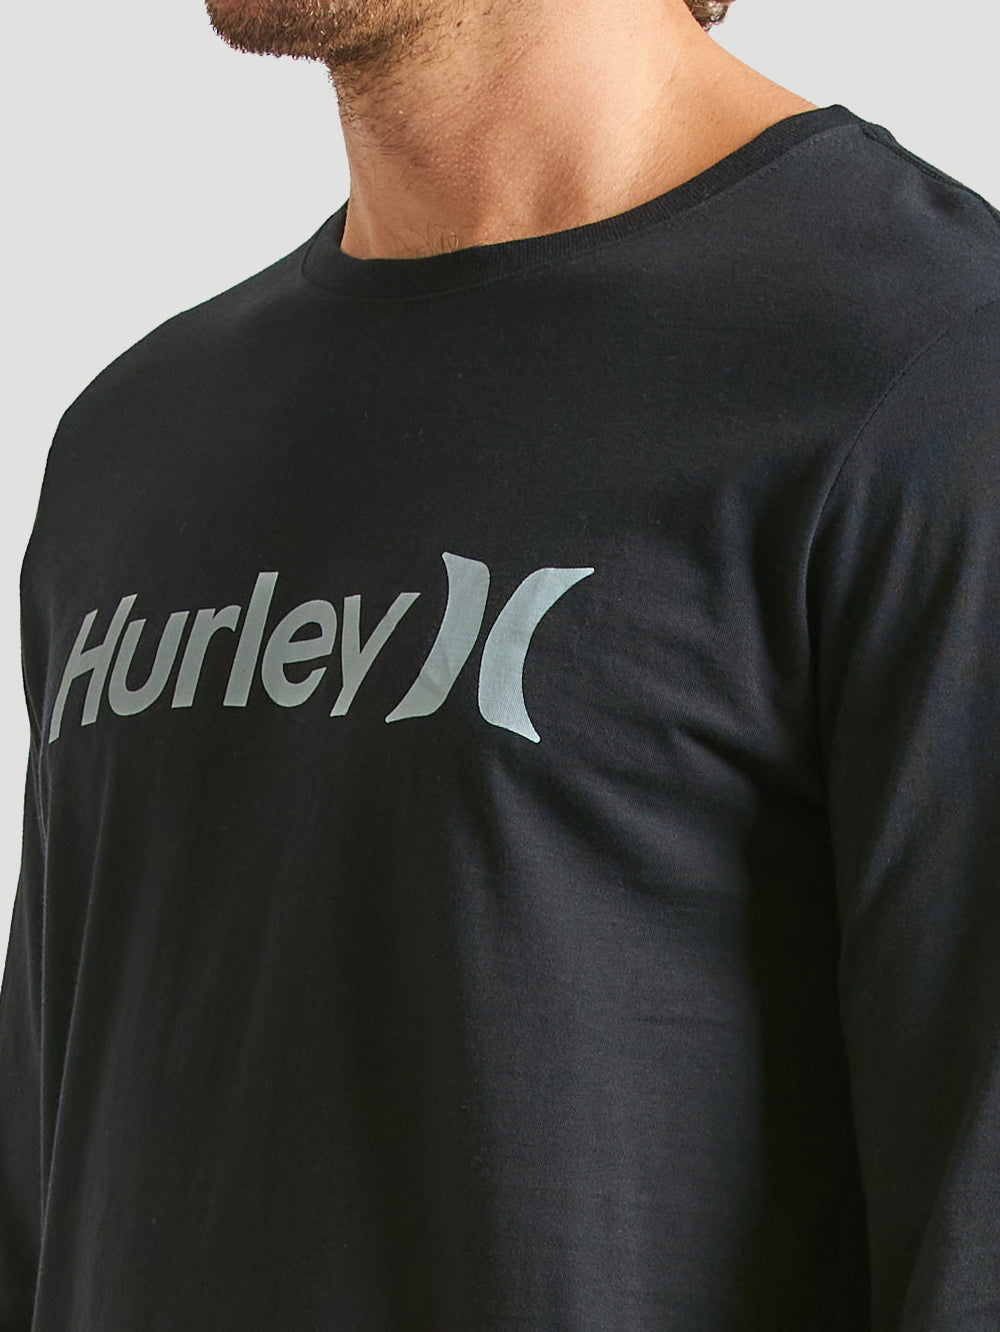 Camiseta Manga Longa Hurley O&O Solid Preto